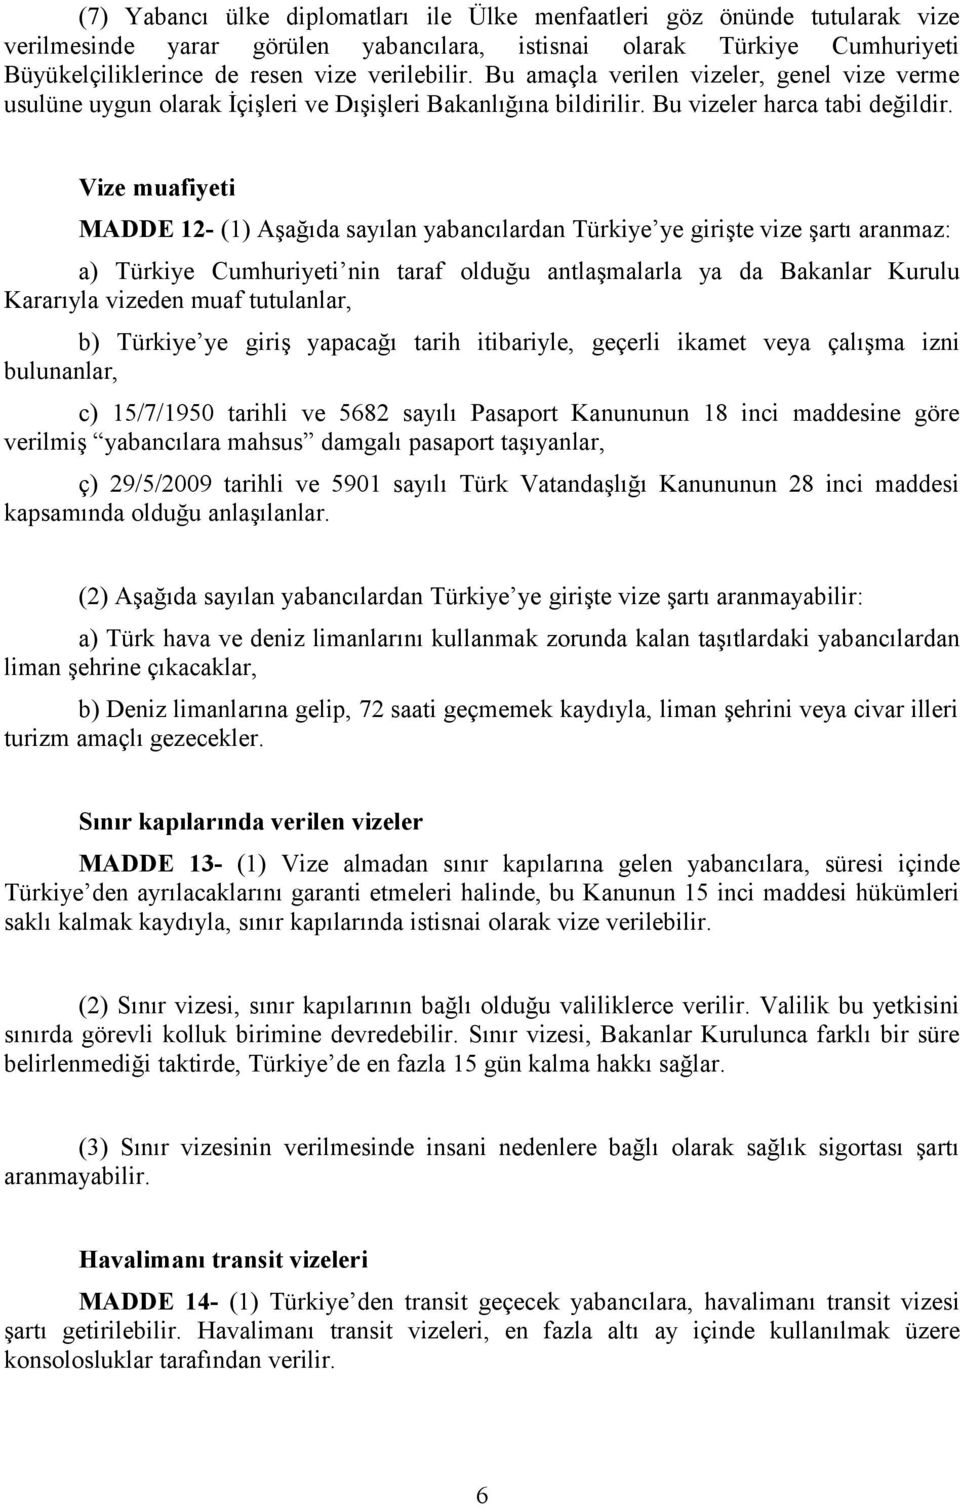 Vize muafiyeti MADDE 12- (1) Aşağıda sayılan yabancılardan Türkiye ye girişte vize şartı aranmaz: a) Türkiye Cumhuriyeti nin taraf olduğu antlaşmalarla ya da Bakanlar Kurulu Kararıyla vizeden muaf